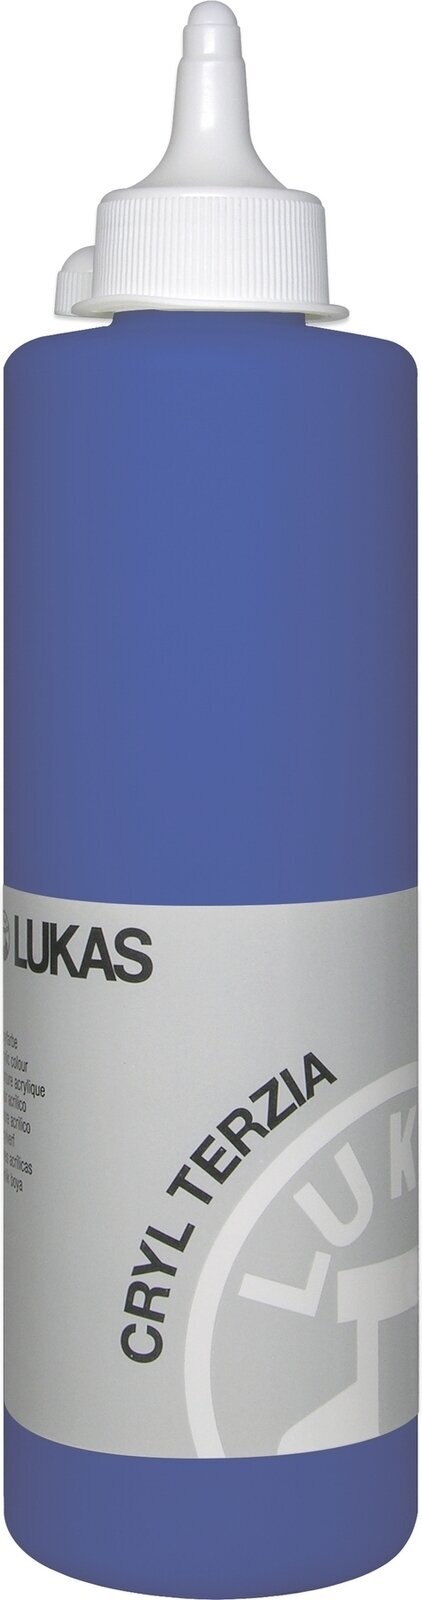 Akrilna barva Lukas Cryl Terzia Akrilna barva 500 ml Ultramarine